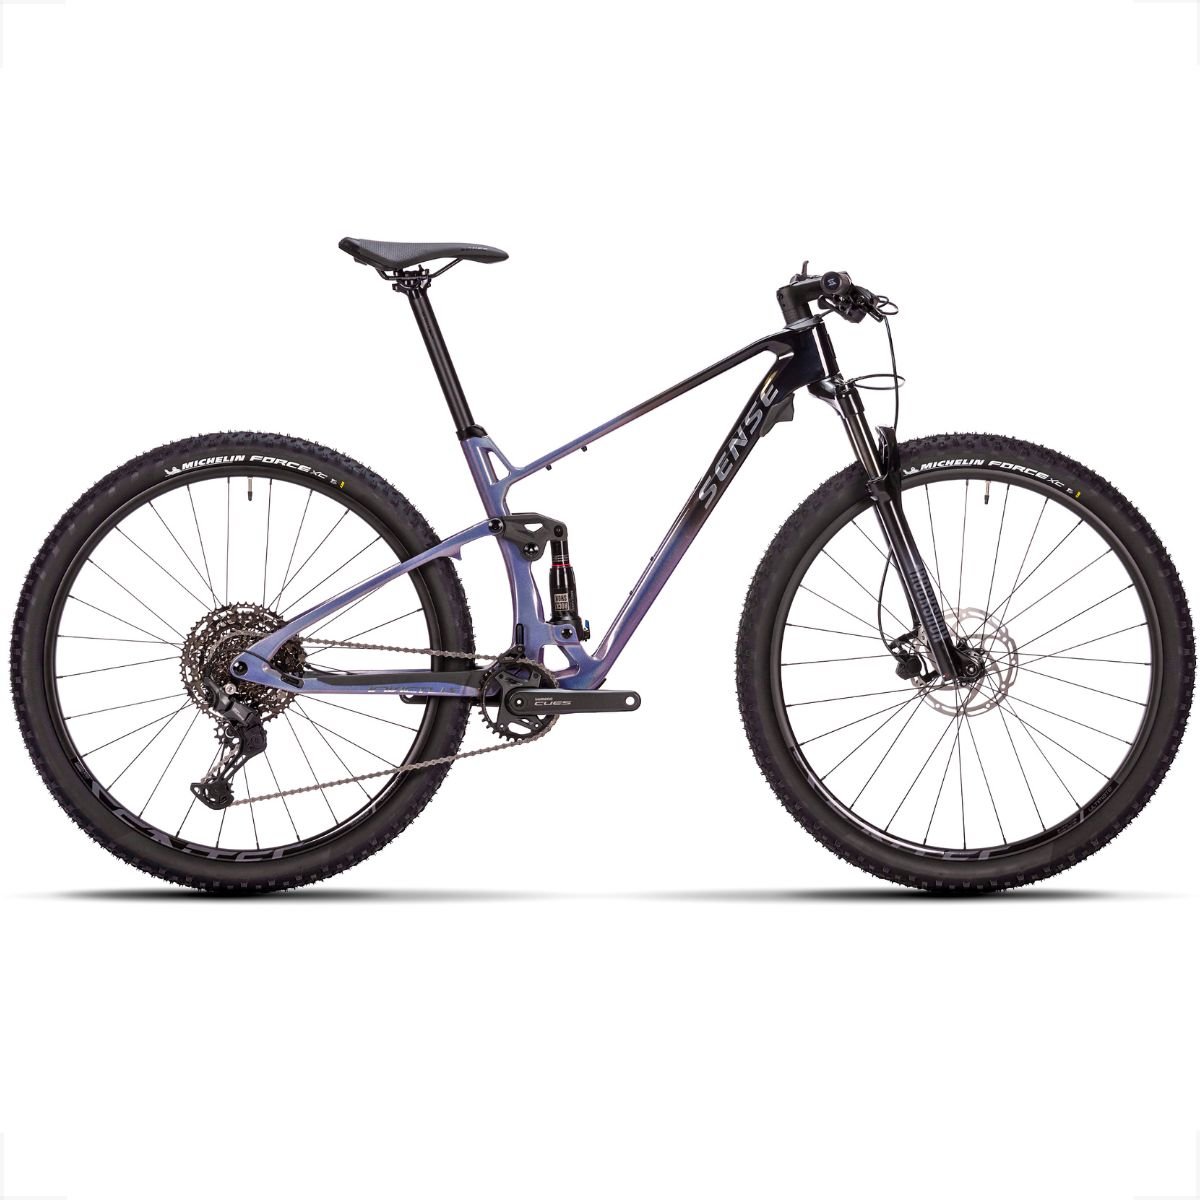 Bicicleta Full Sense Invictus Sport Carbono Shimano Cues:roxo+preto/17 - 2